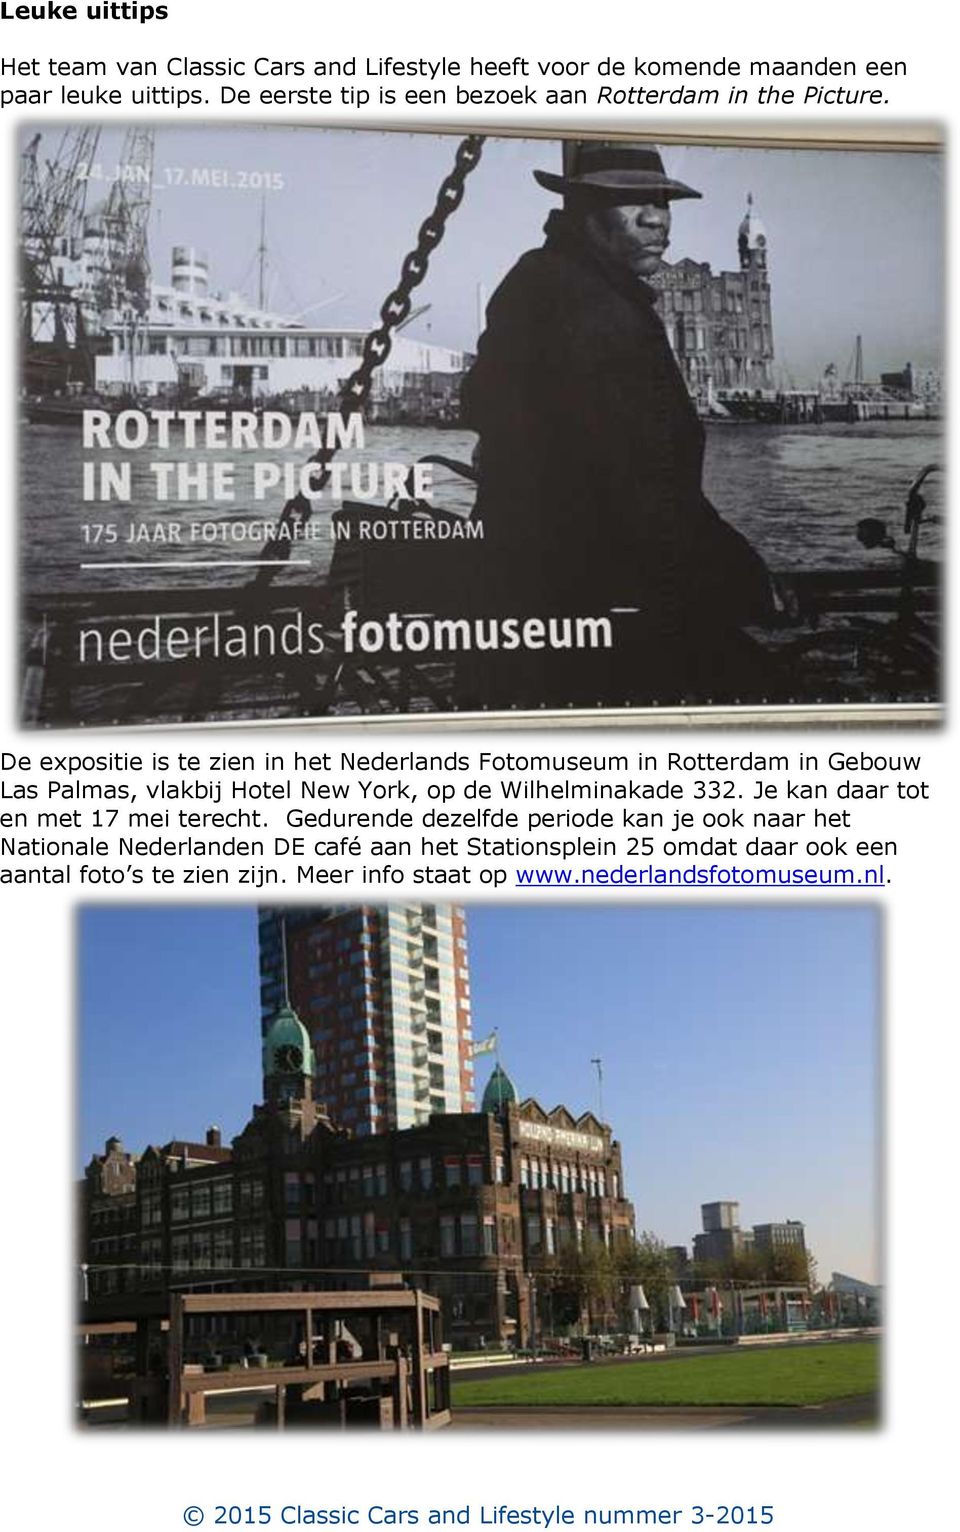 De expositie is te zien in het Nederlands Fotomuseum in Rotterdam in Gebouw Las Palmas, vlakbij Hotel New York, op de Wilhelminakade